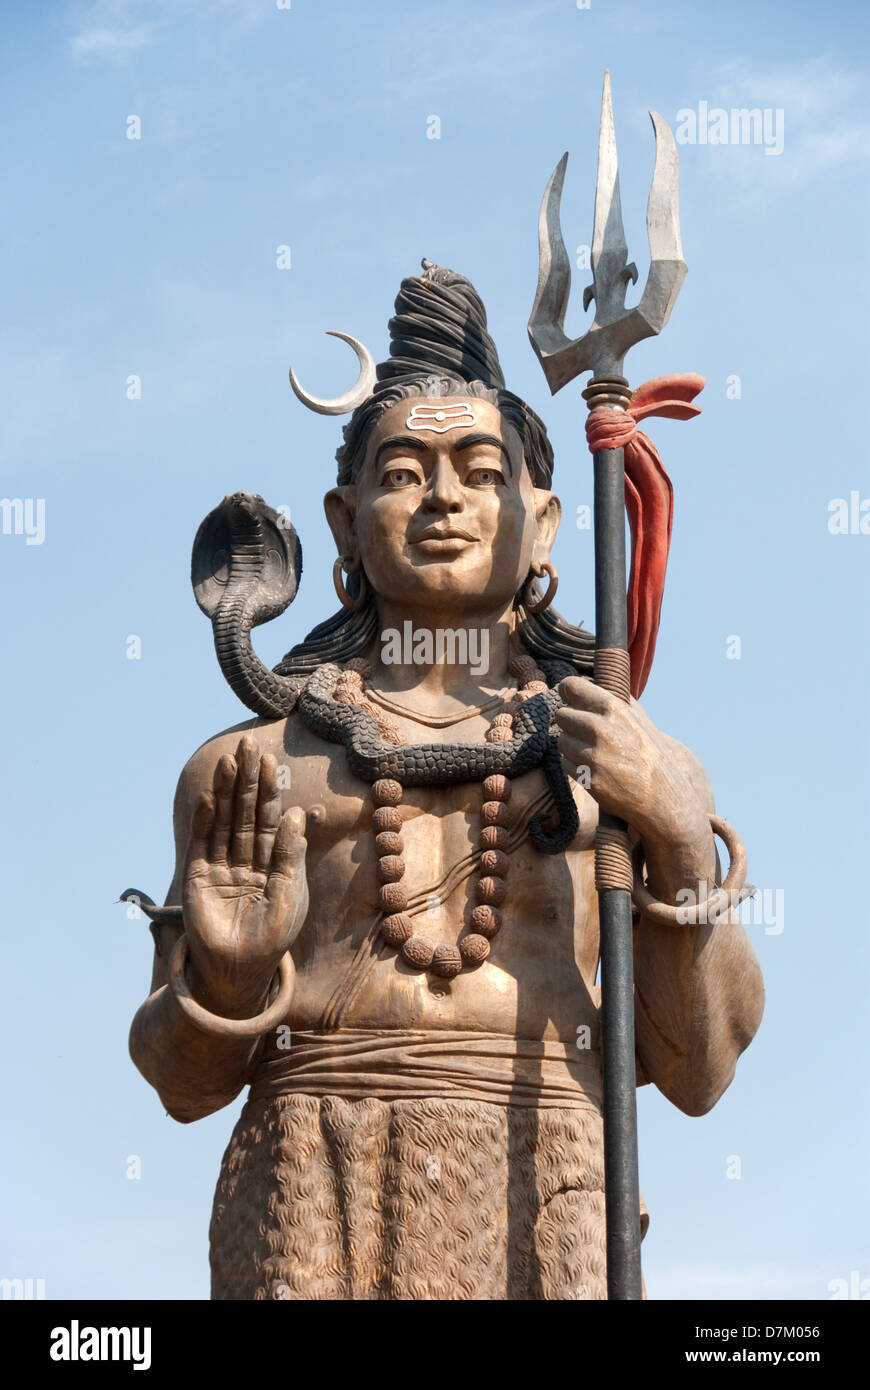 Signore Shiva con una bobina Cobra intorno al suo collo è chi incantatori di serpenti hanno creduto sono i diretti discendenti da. Signore Shiva è raffigurato con un cobra avvolto intorno al suo collo e è stato venerato da milioni di indù per secoli e ancora oggi molti indù cercano Saperas così come essi possono rendere omaggio a vivere cobras. Foto Stock